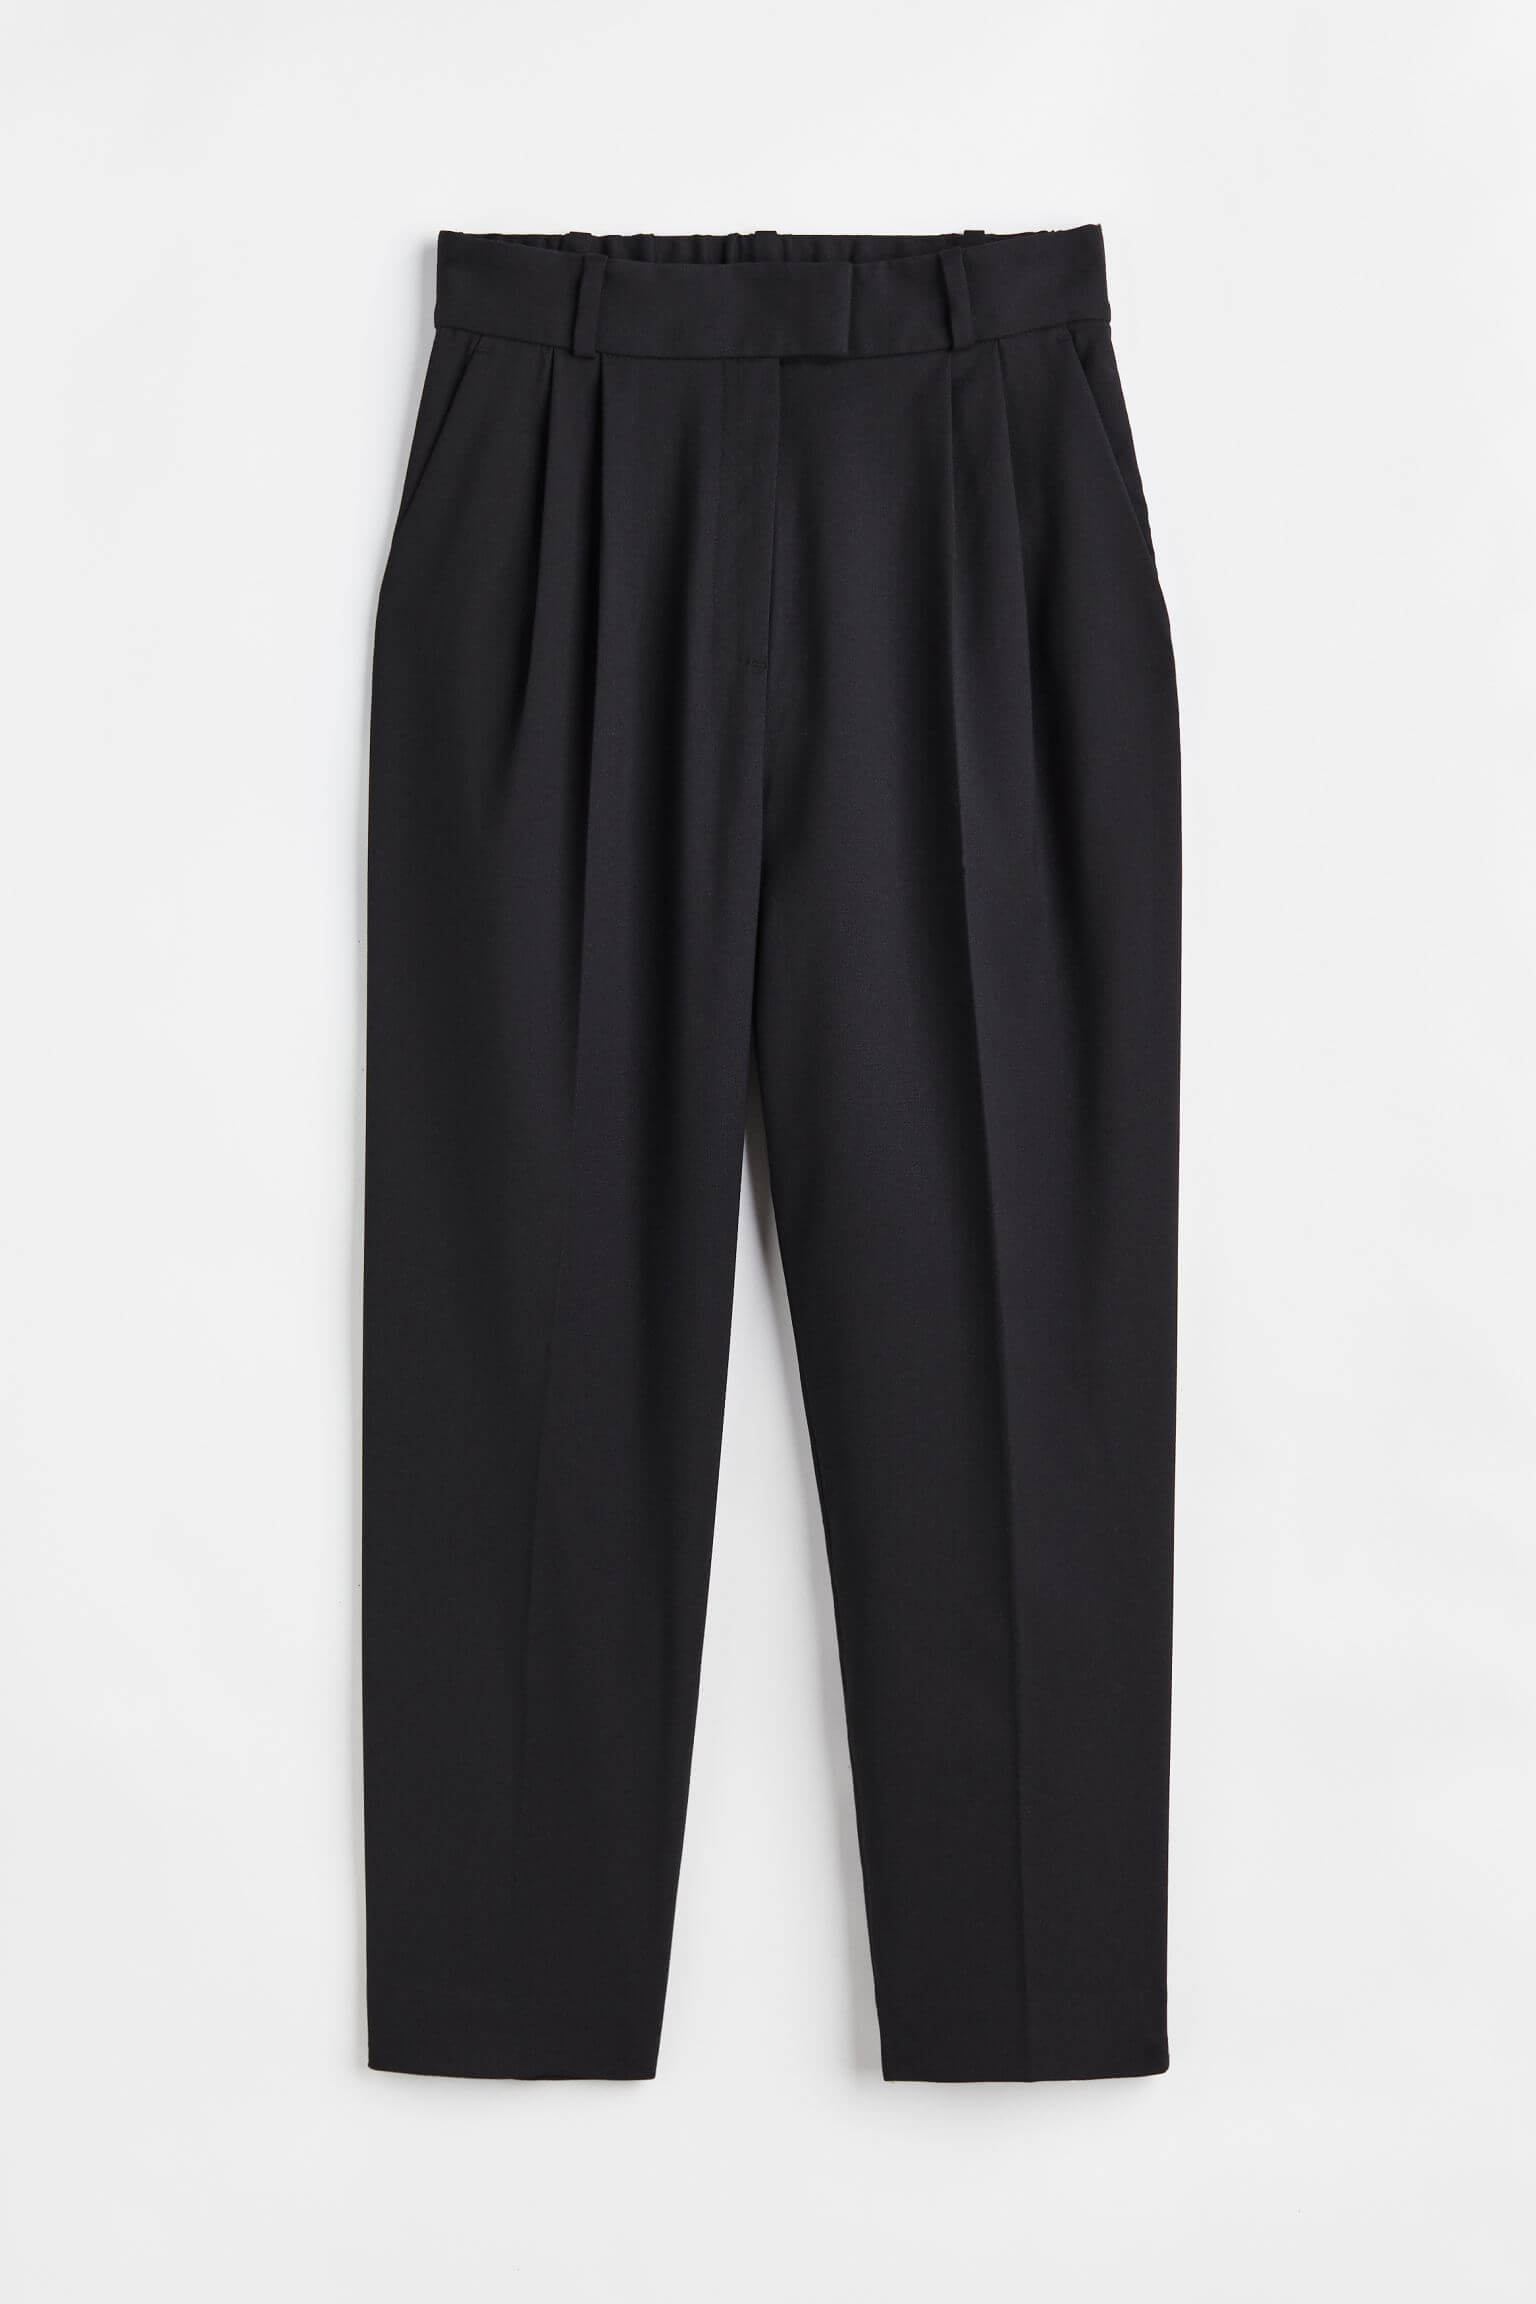 Брюки H&M Ankle-length, черный брюки uniqlo smart wool like ankle length черный